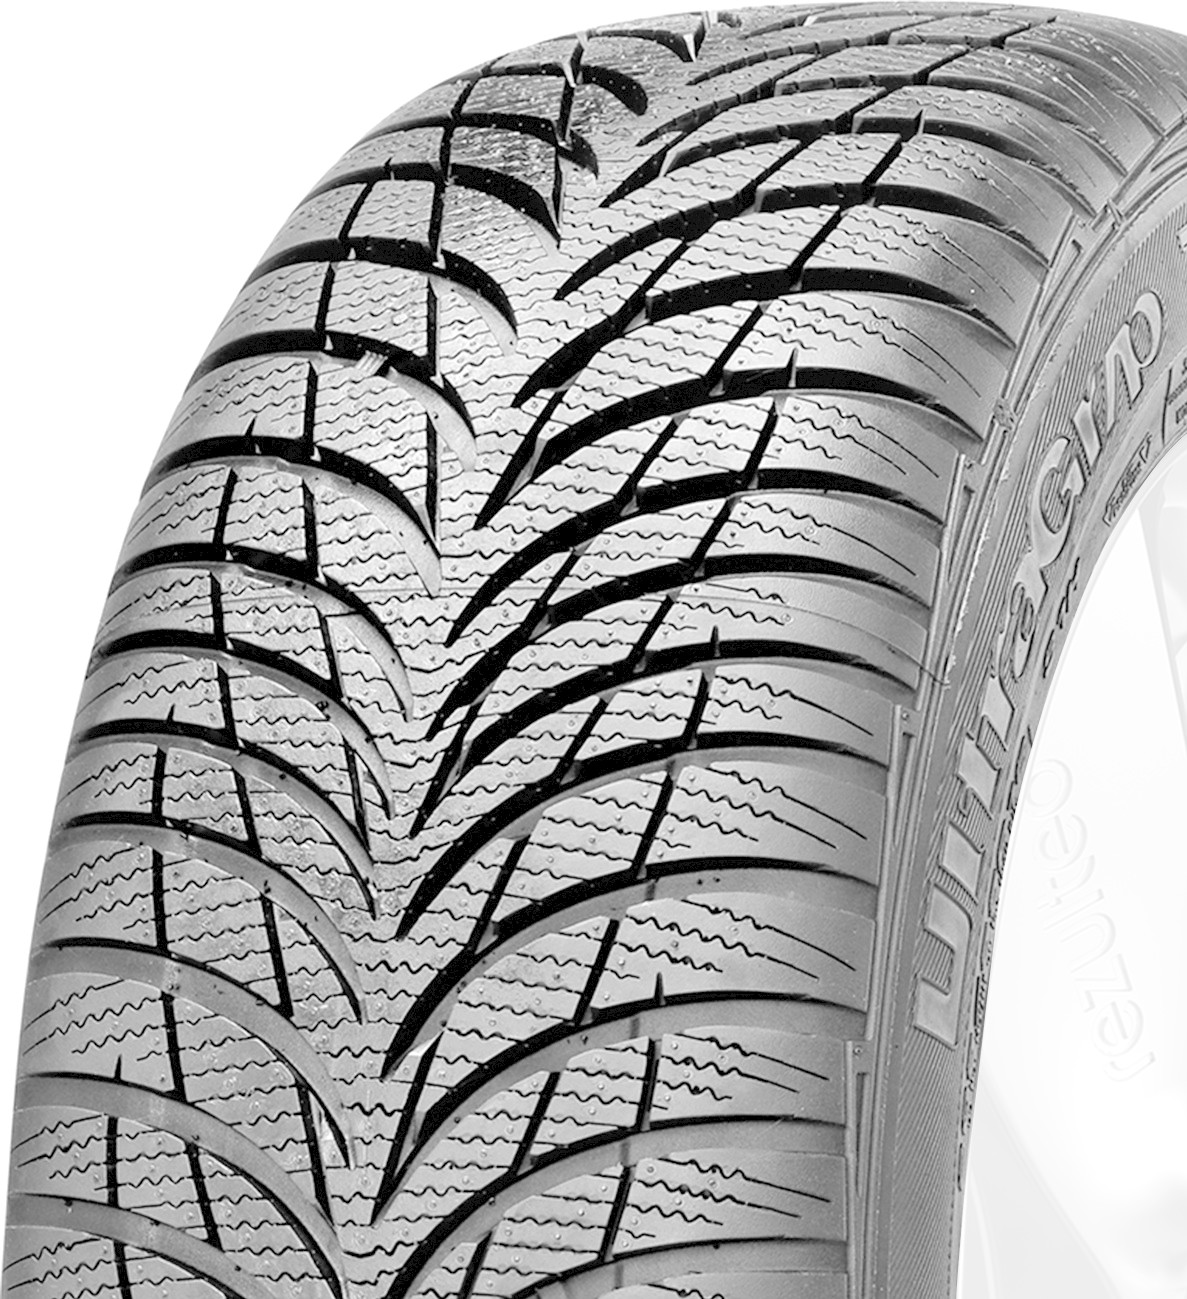 1 pneu hiver m+s 205 55 16 91 h goodyear ultragrip 9 + année 2020 bon état  40 le pneu ferme - Équipement auto